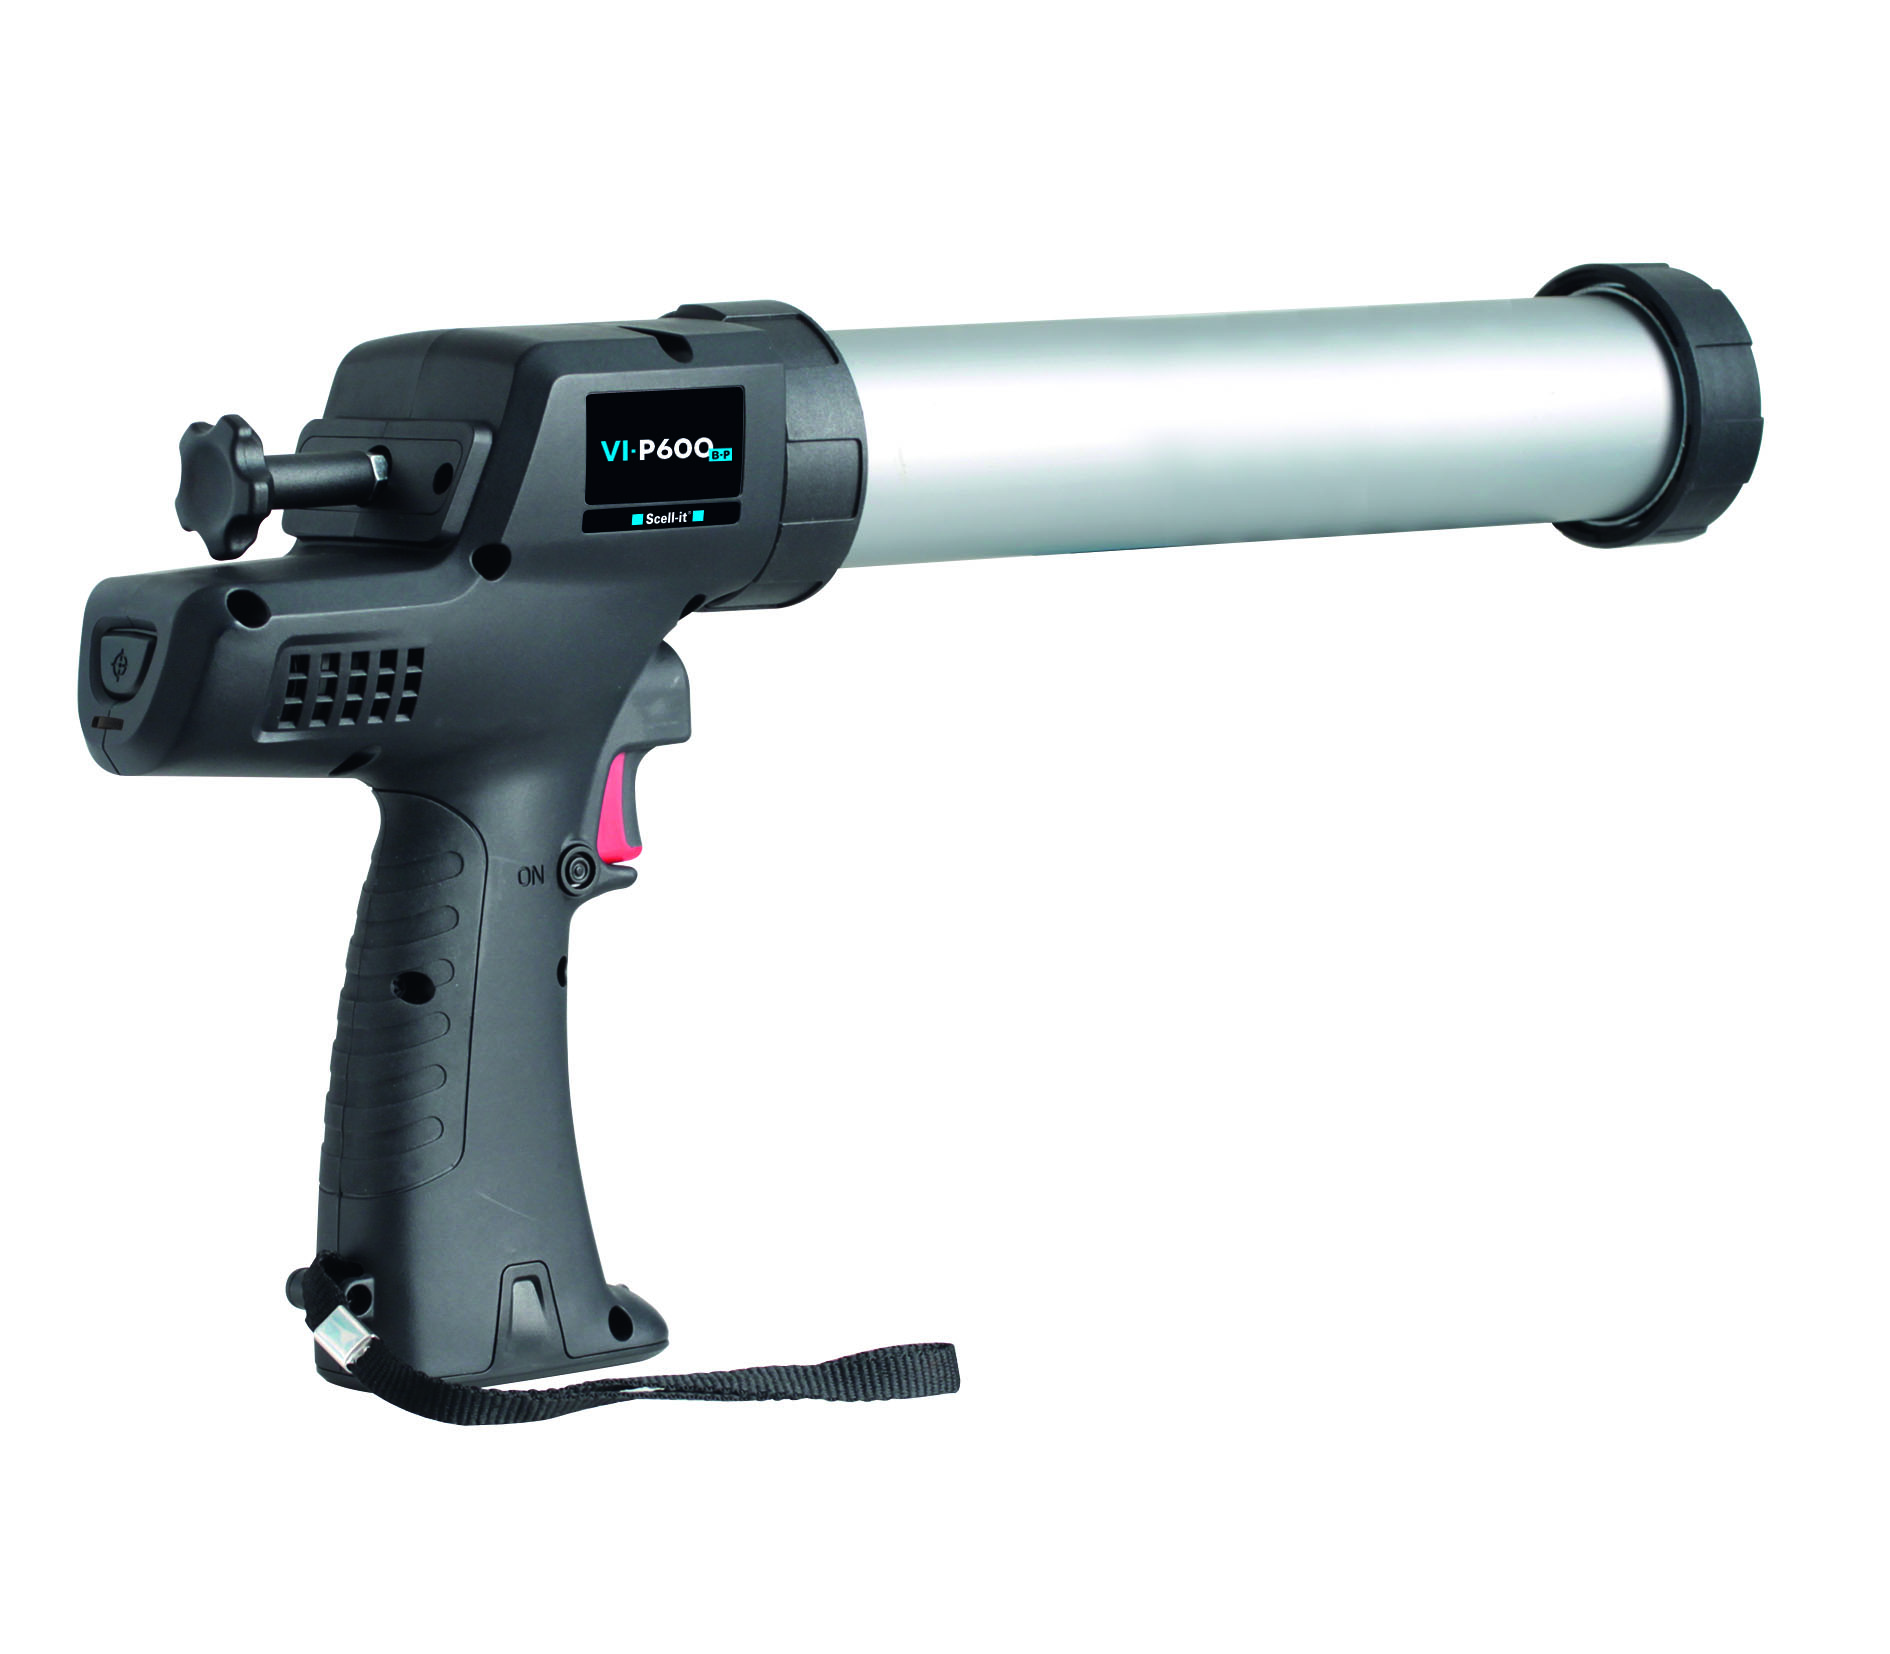 VI-P600b-p resin gun